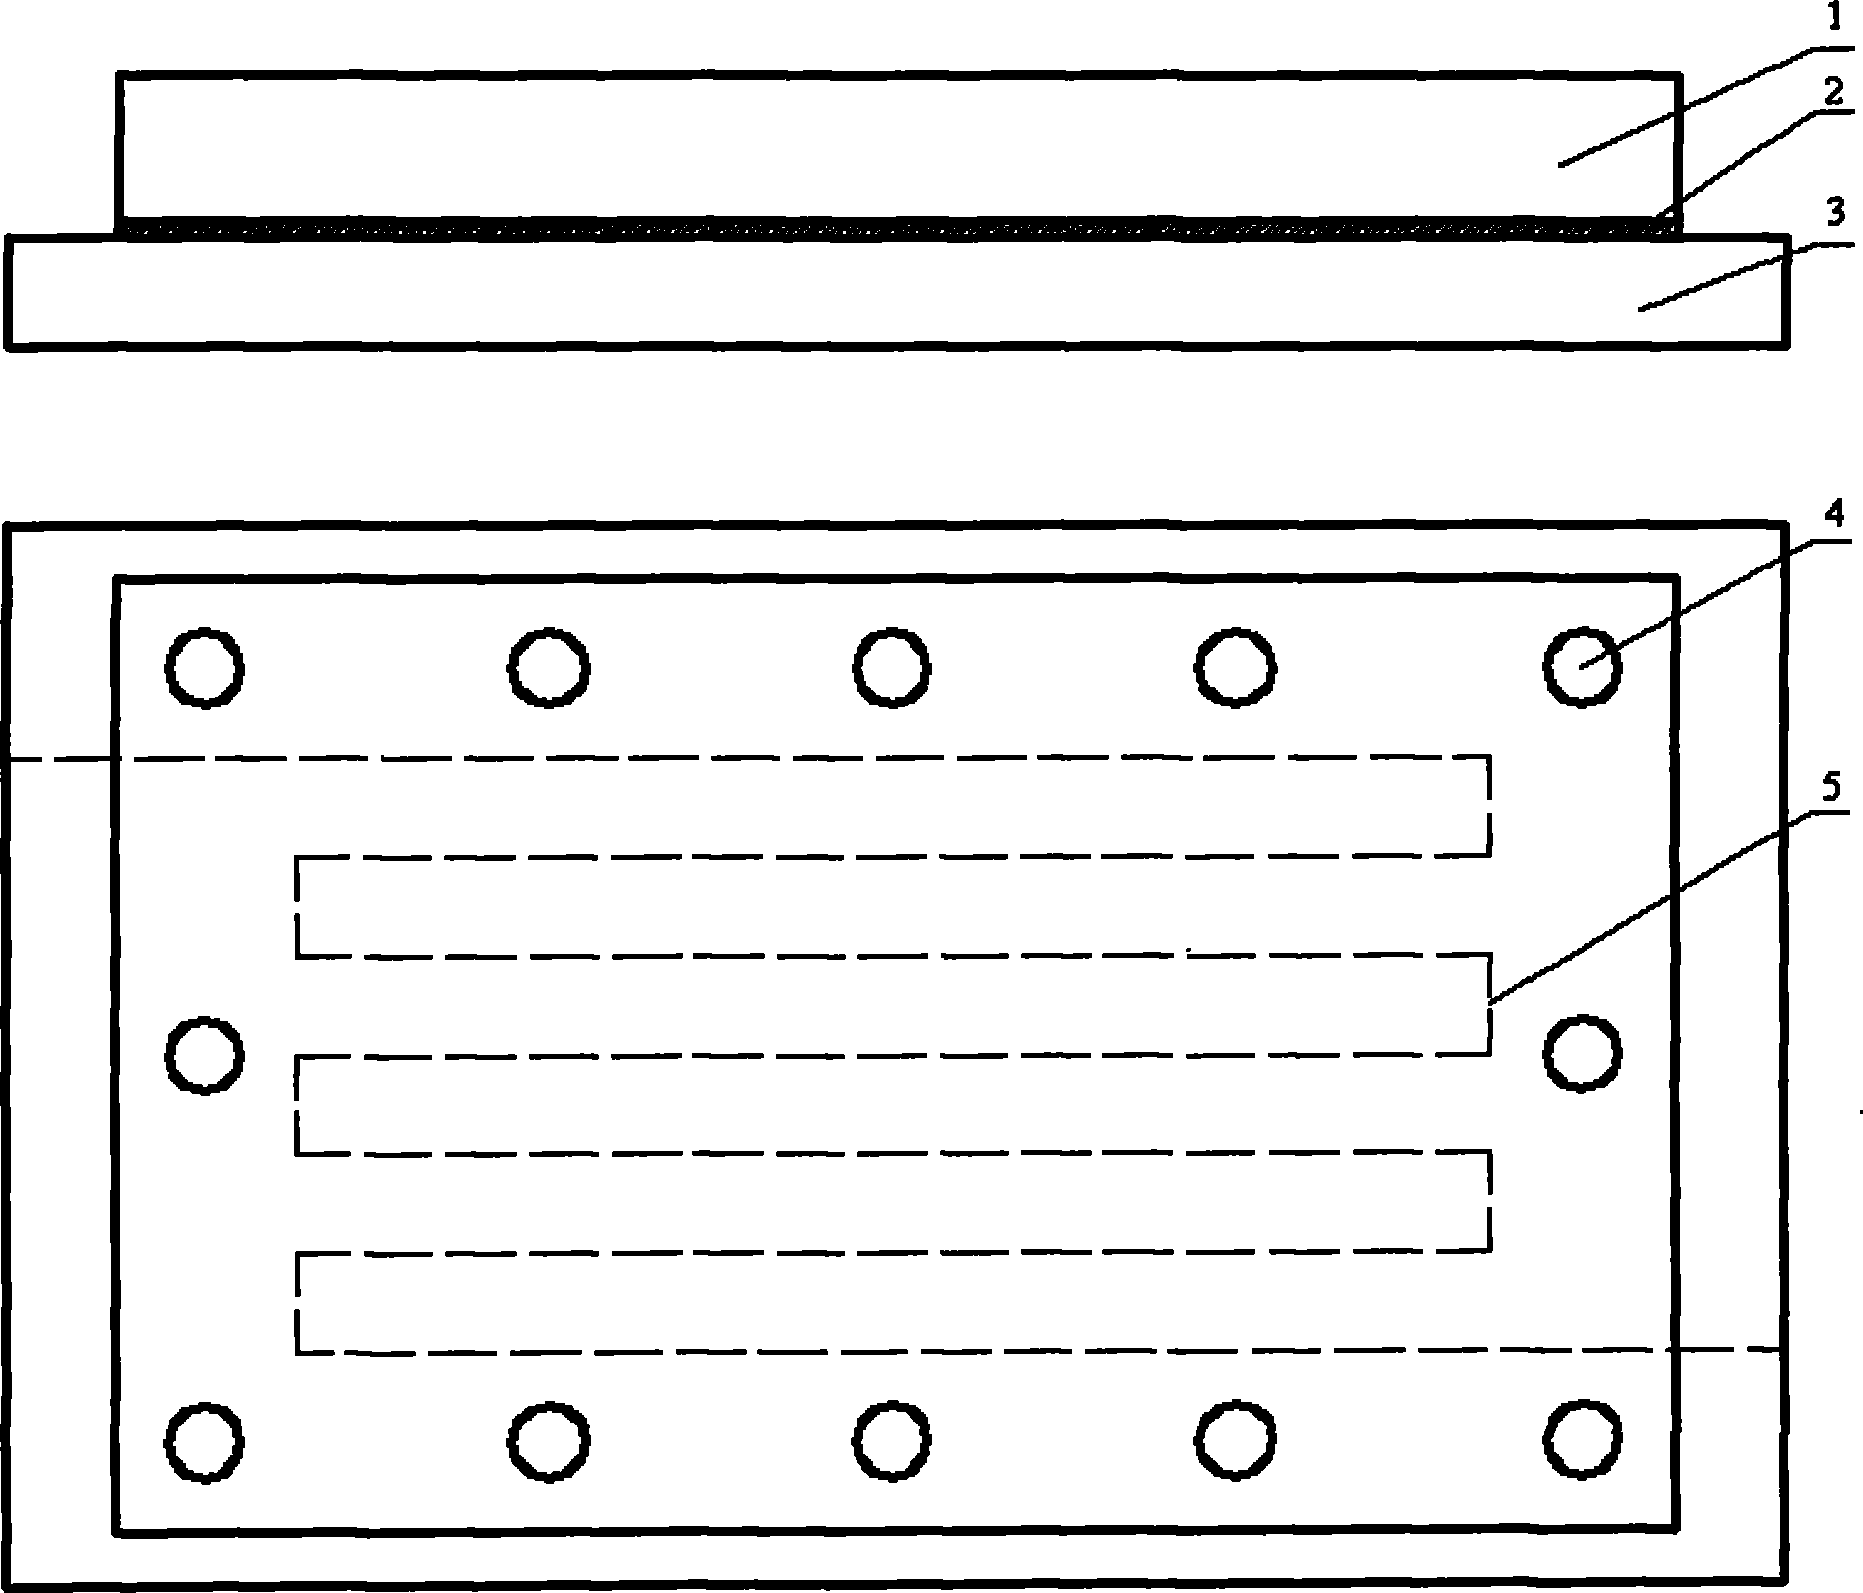 Design method of water-cooling radiator